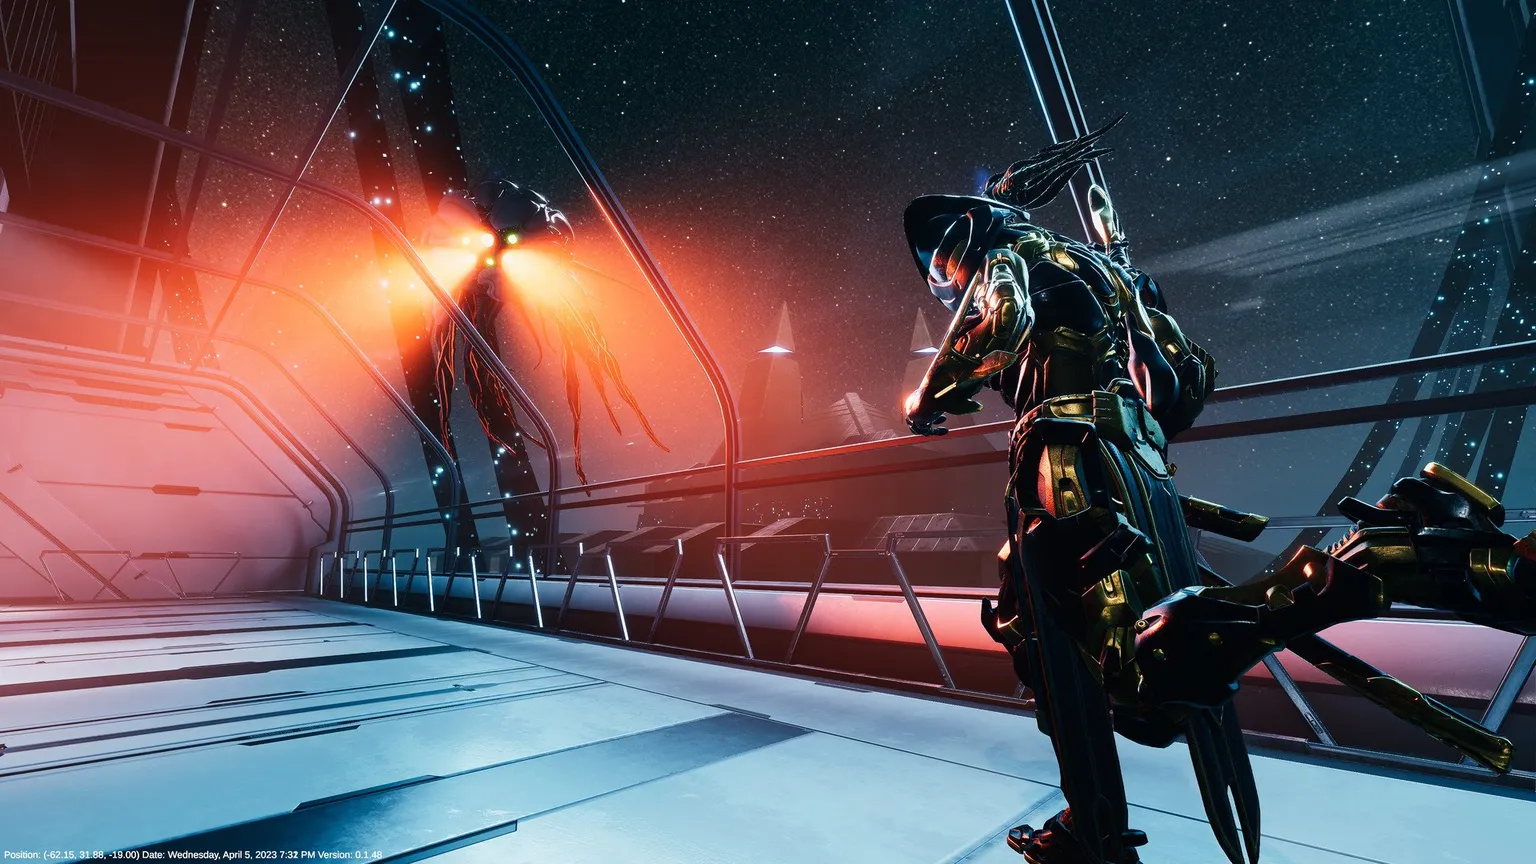 Universe Proving Grounds Screenshot, amelyen Reyu egy disztópikus sci-fi folyosón látható nagy robotdrónnal, csápjai vörös fénnyel világítanak felé.